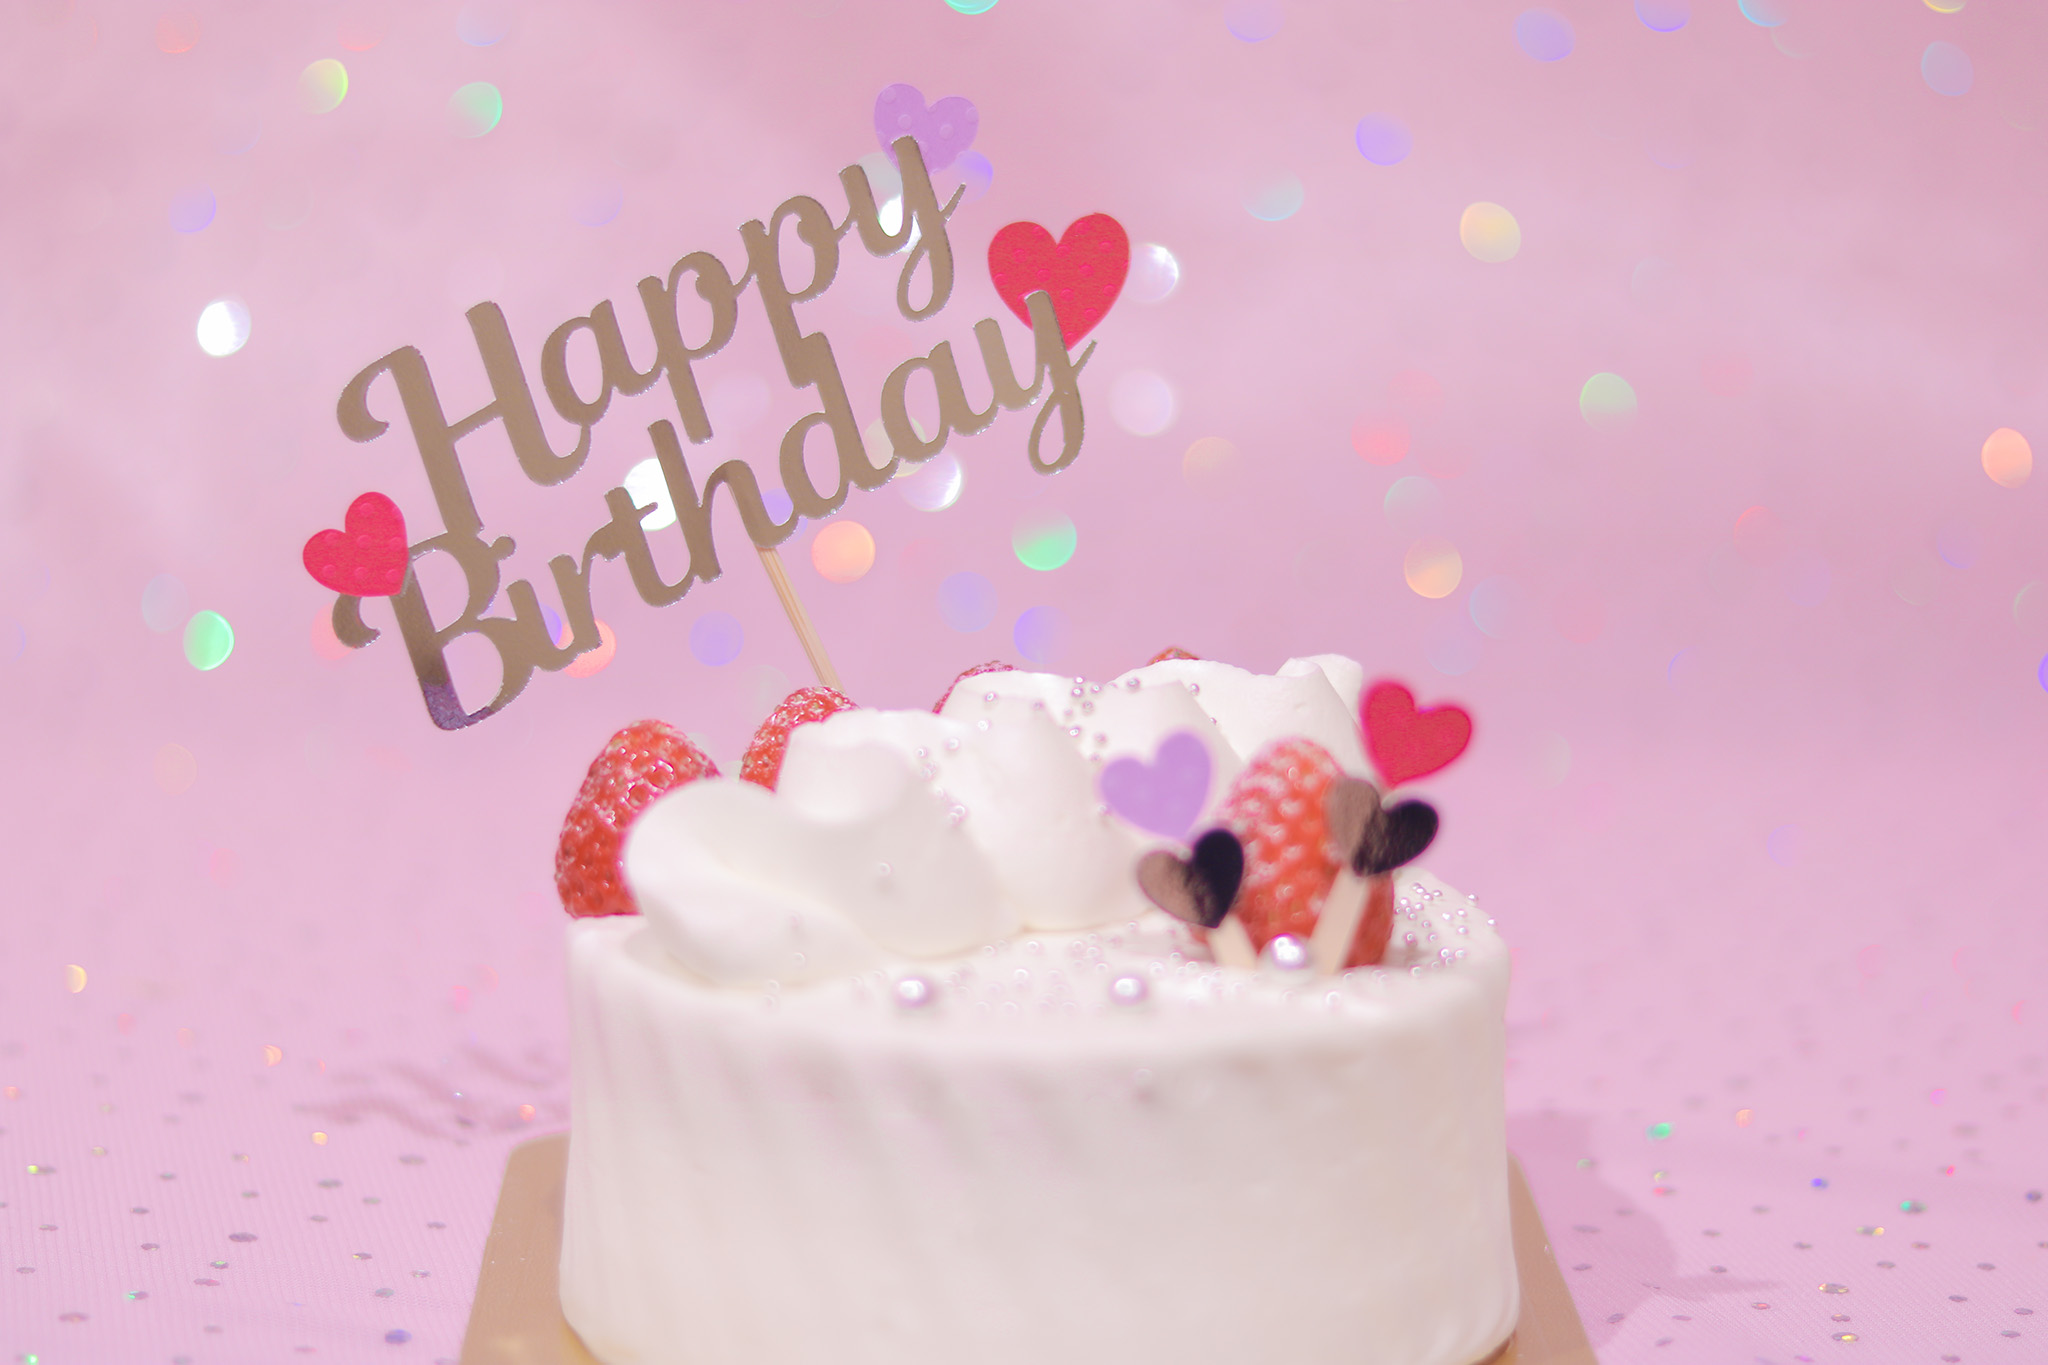 かわいい誕生日画像 豪華な誕生日ケーキとハートが可愛いケーキトッパー 中央 の画像 おしゃれなフリー写真素材 Girly Drop